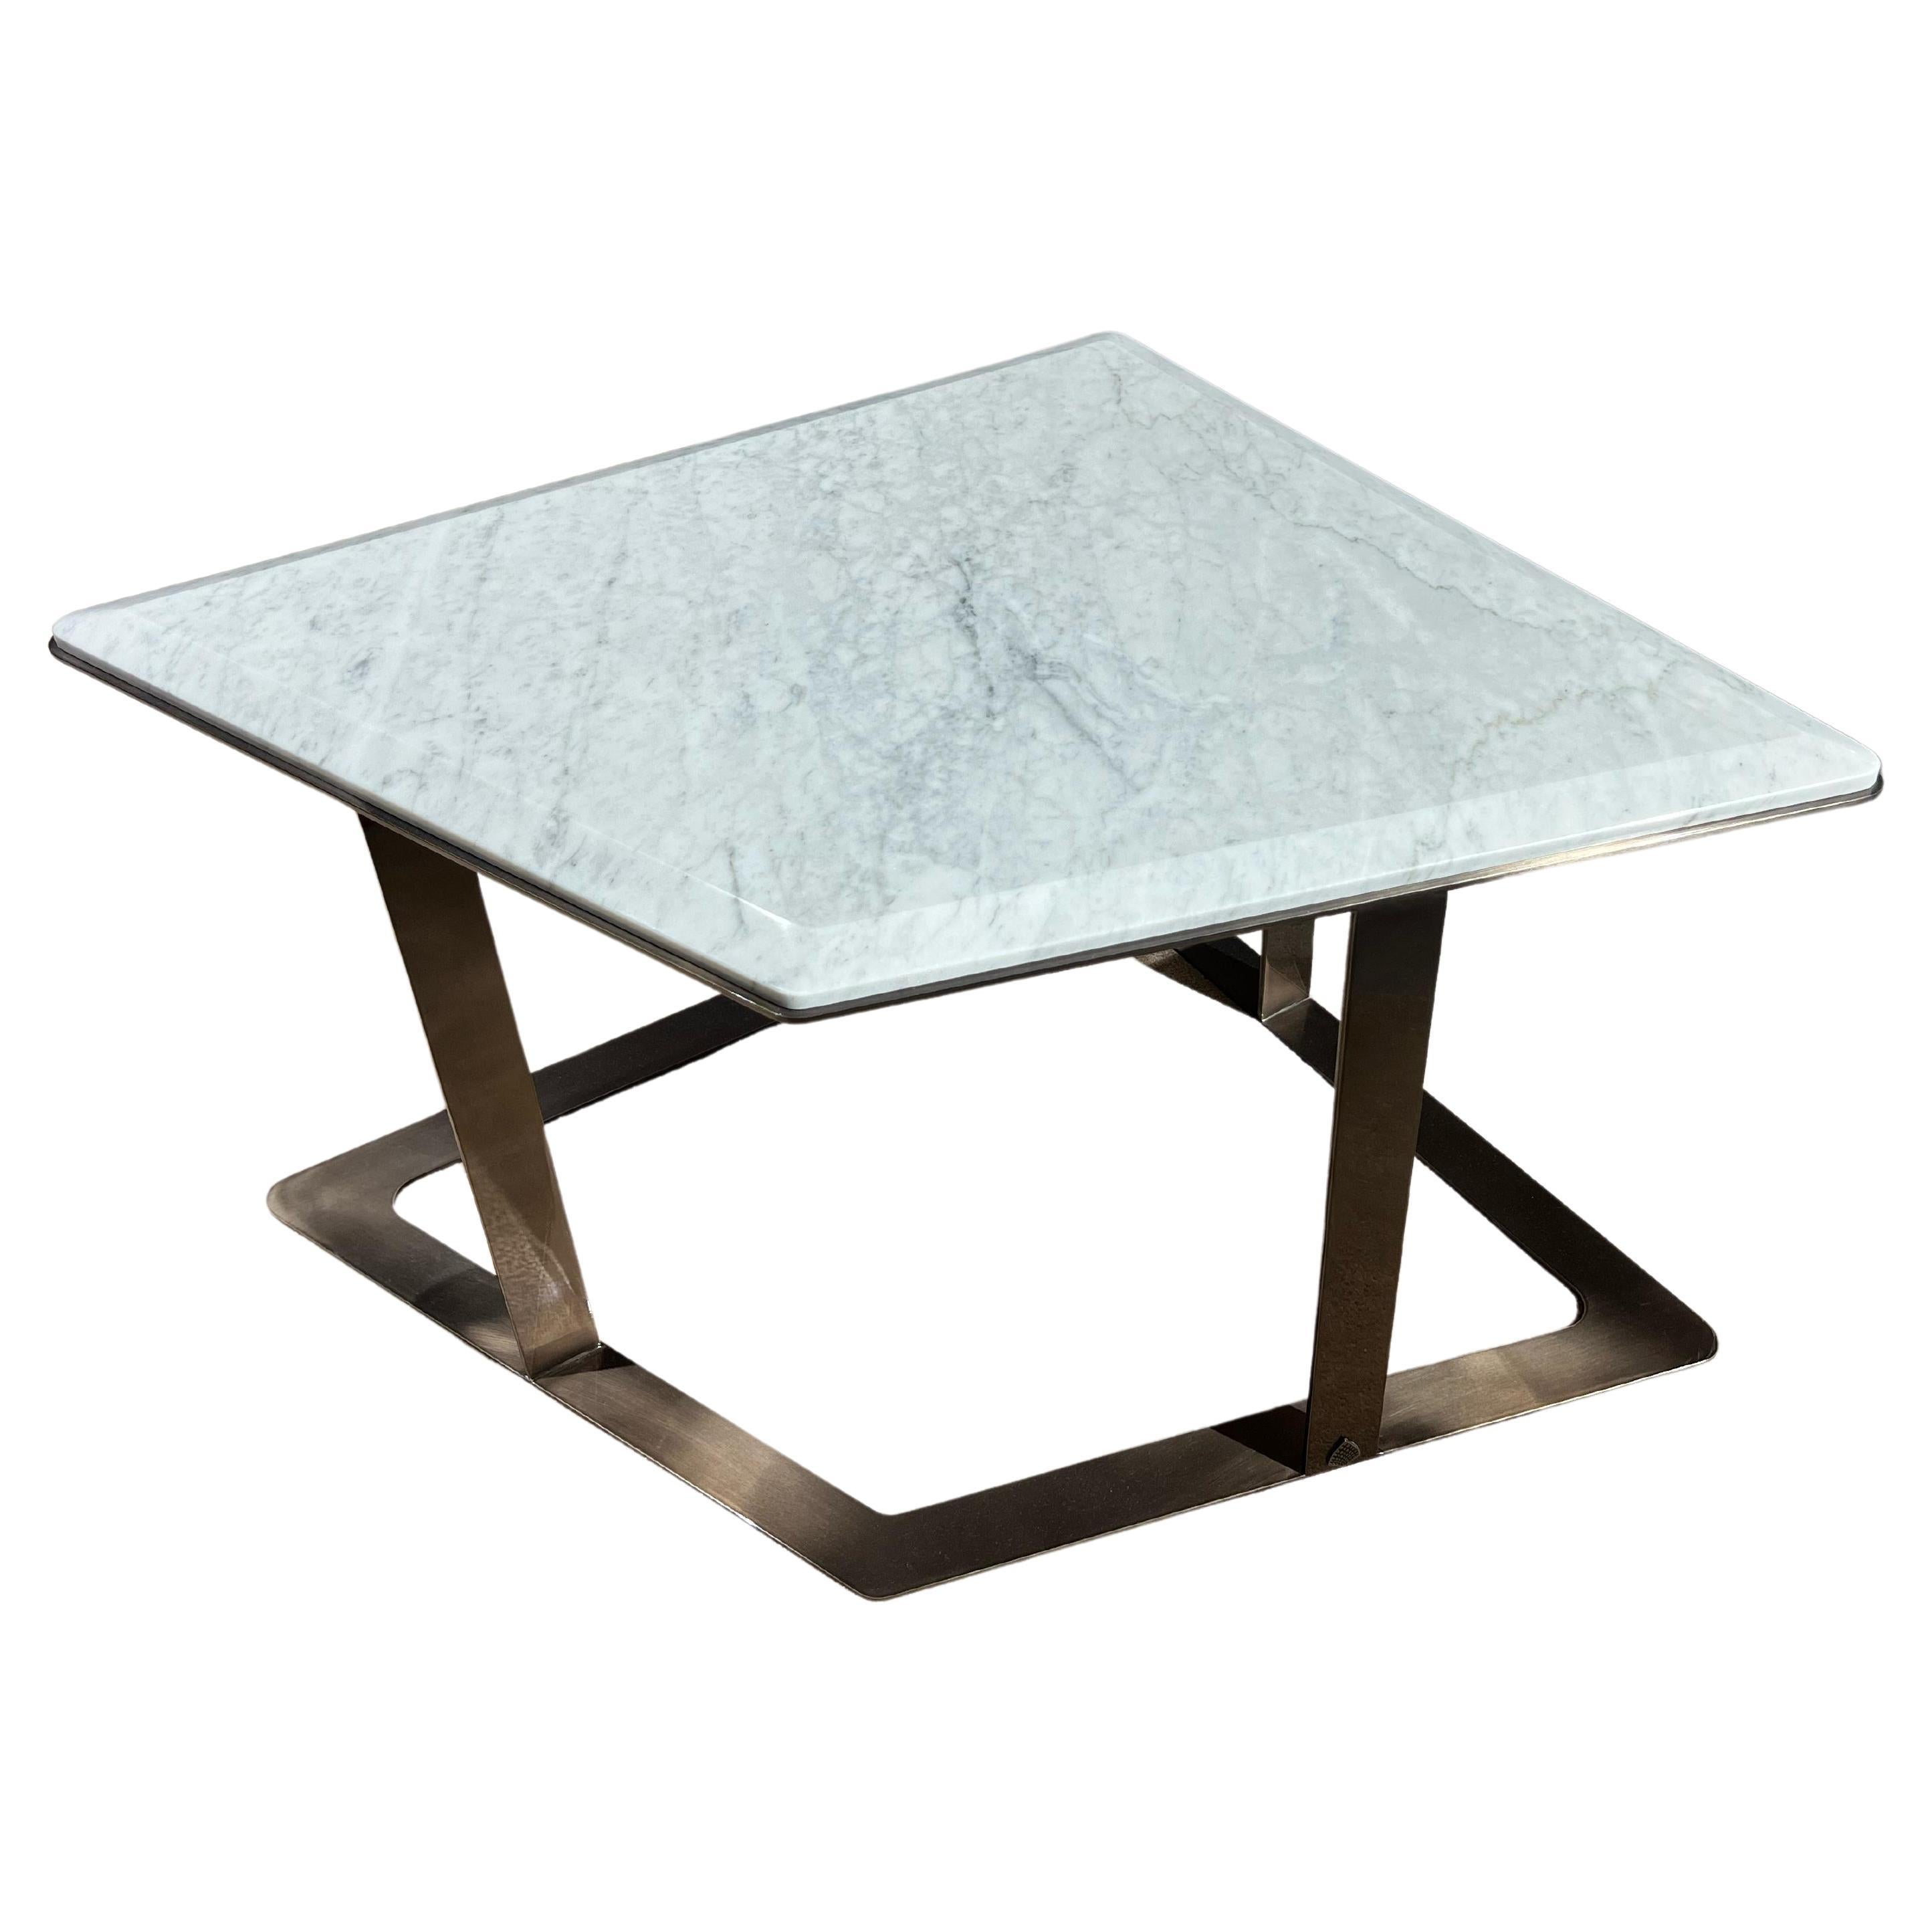 Arturo Terminale tavolino in marmo di carrara e struttura in acciaio nickel nero